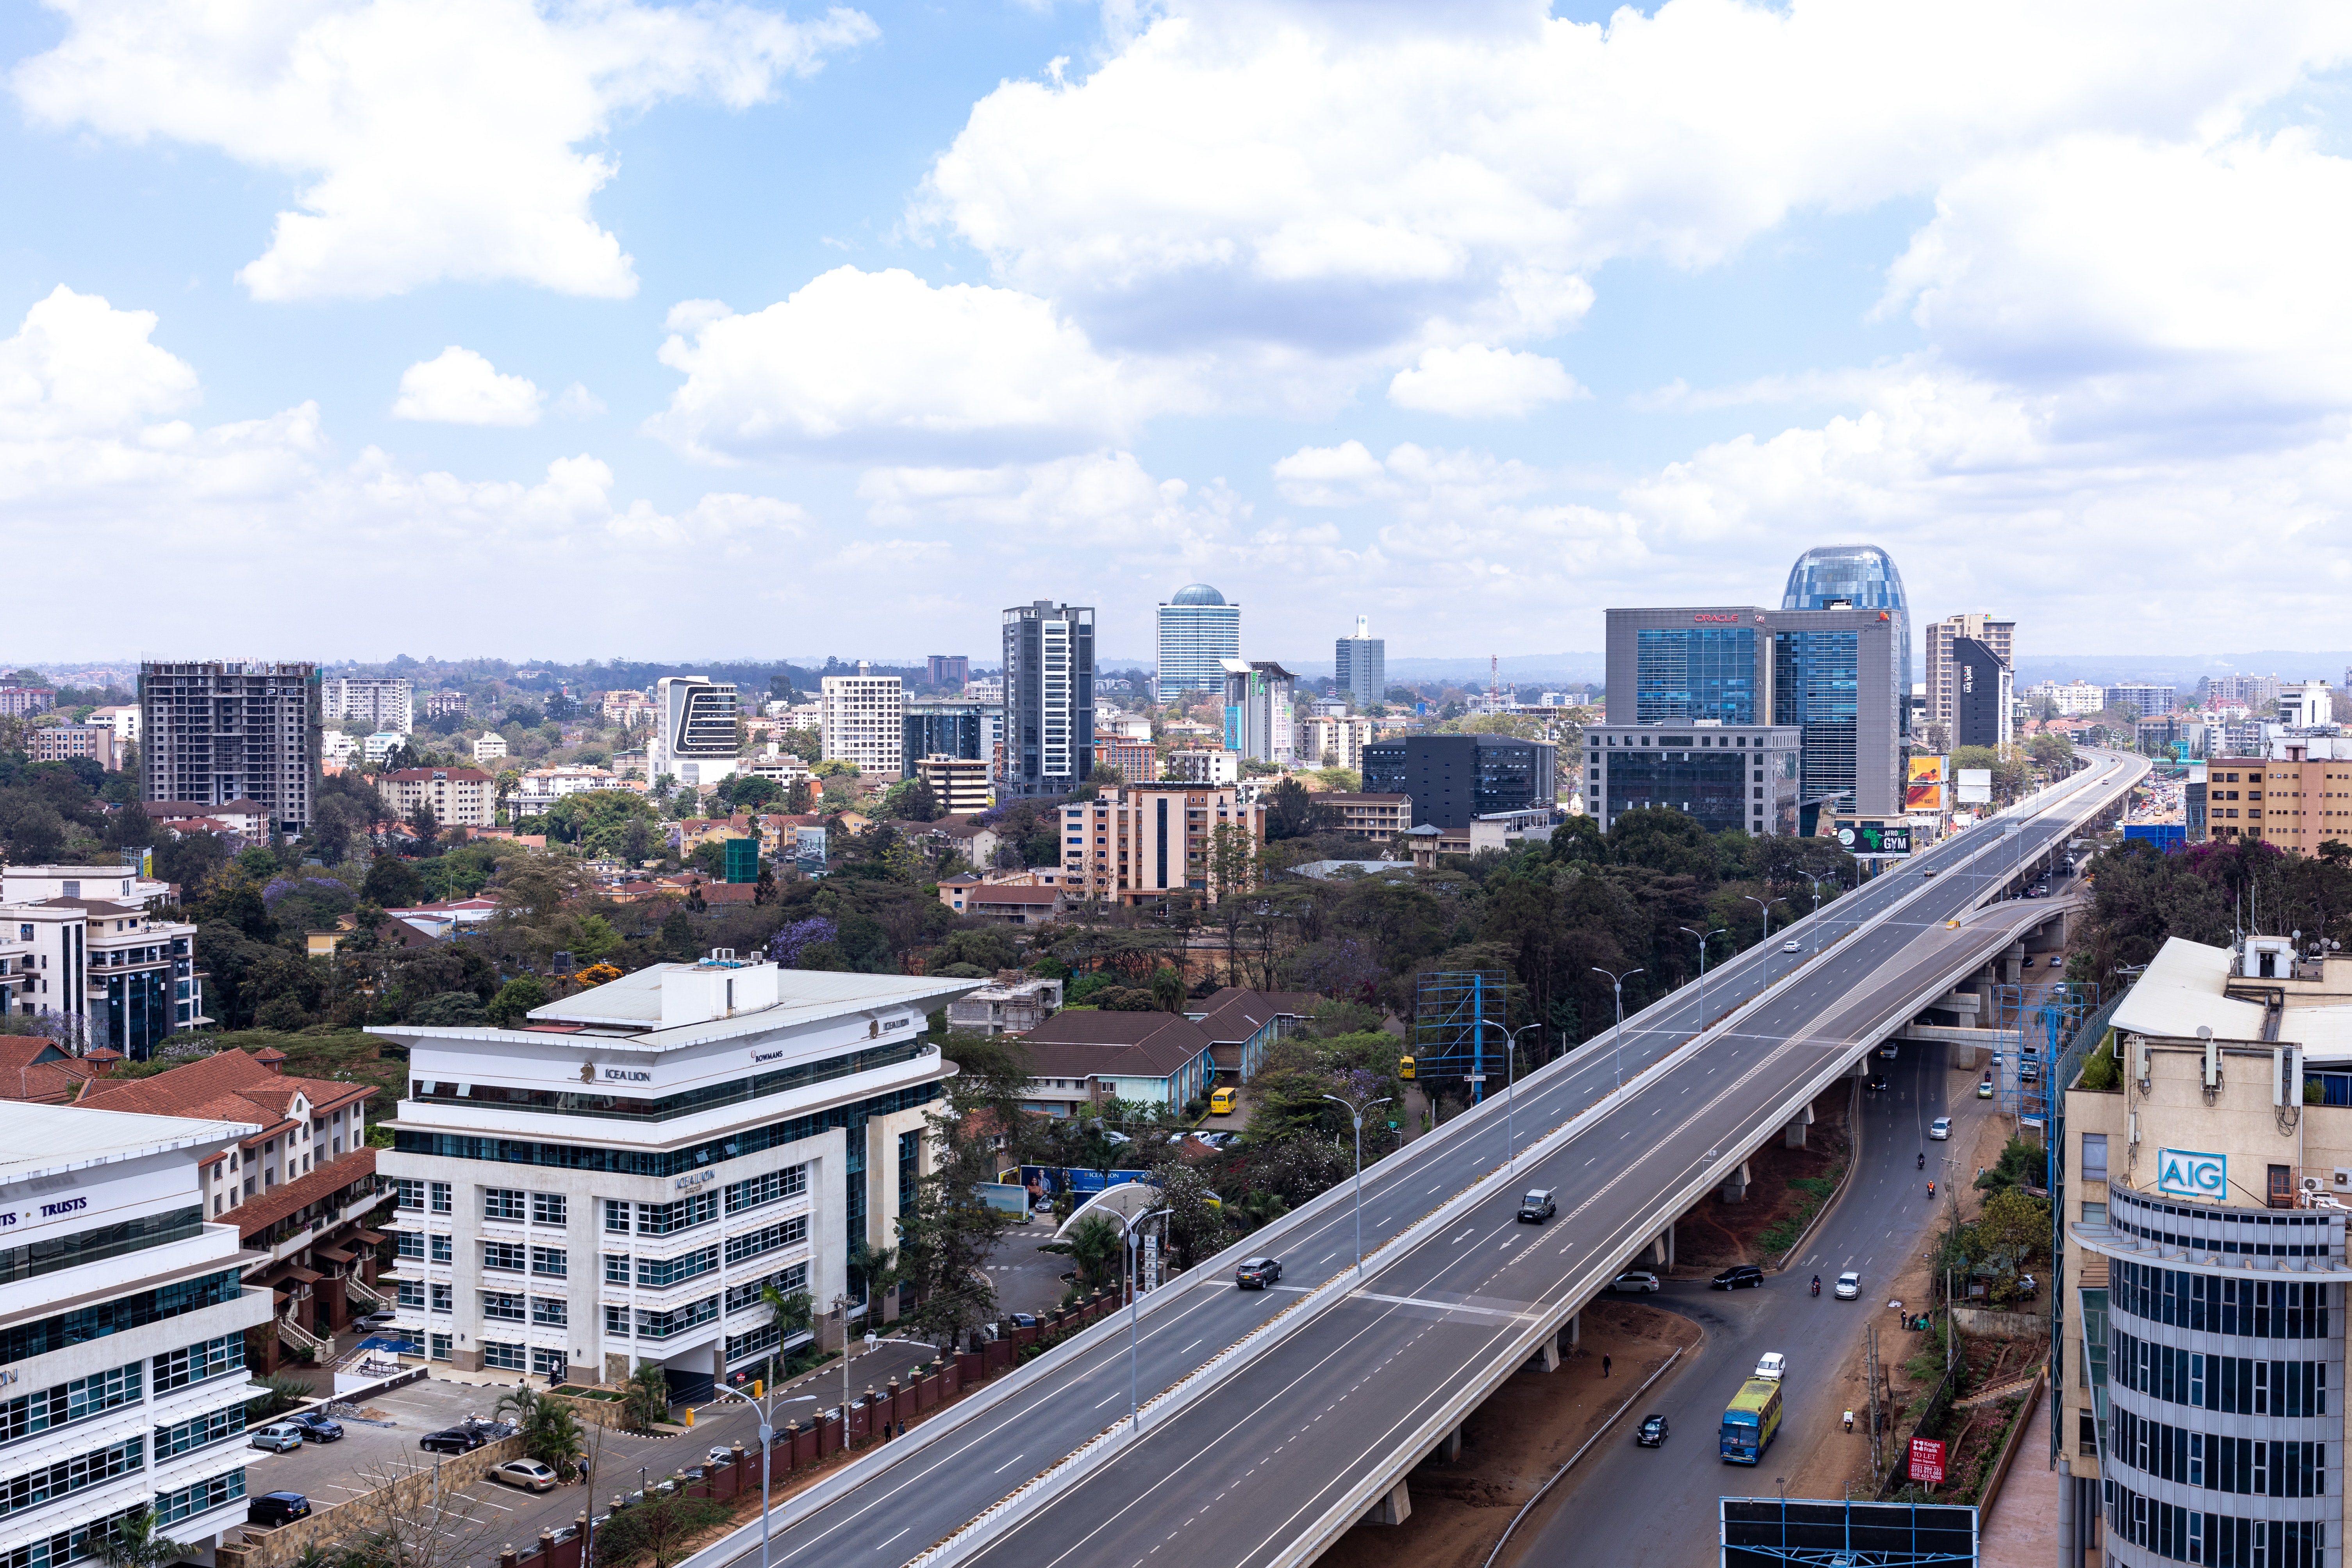 Aerial view of the Nairobi Expressway in Kenya (Anthony Trivet | Pexels)